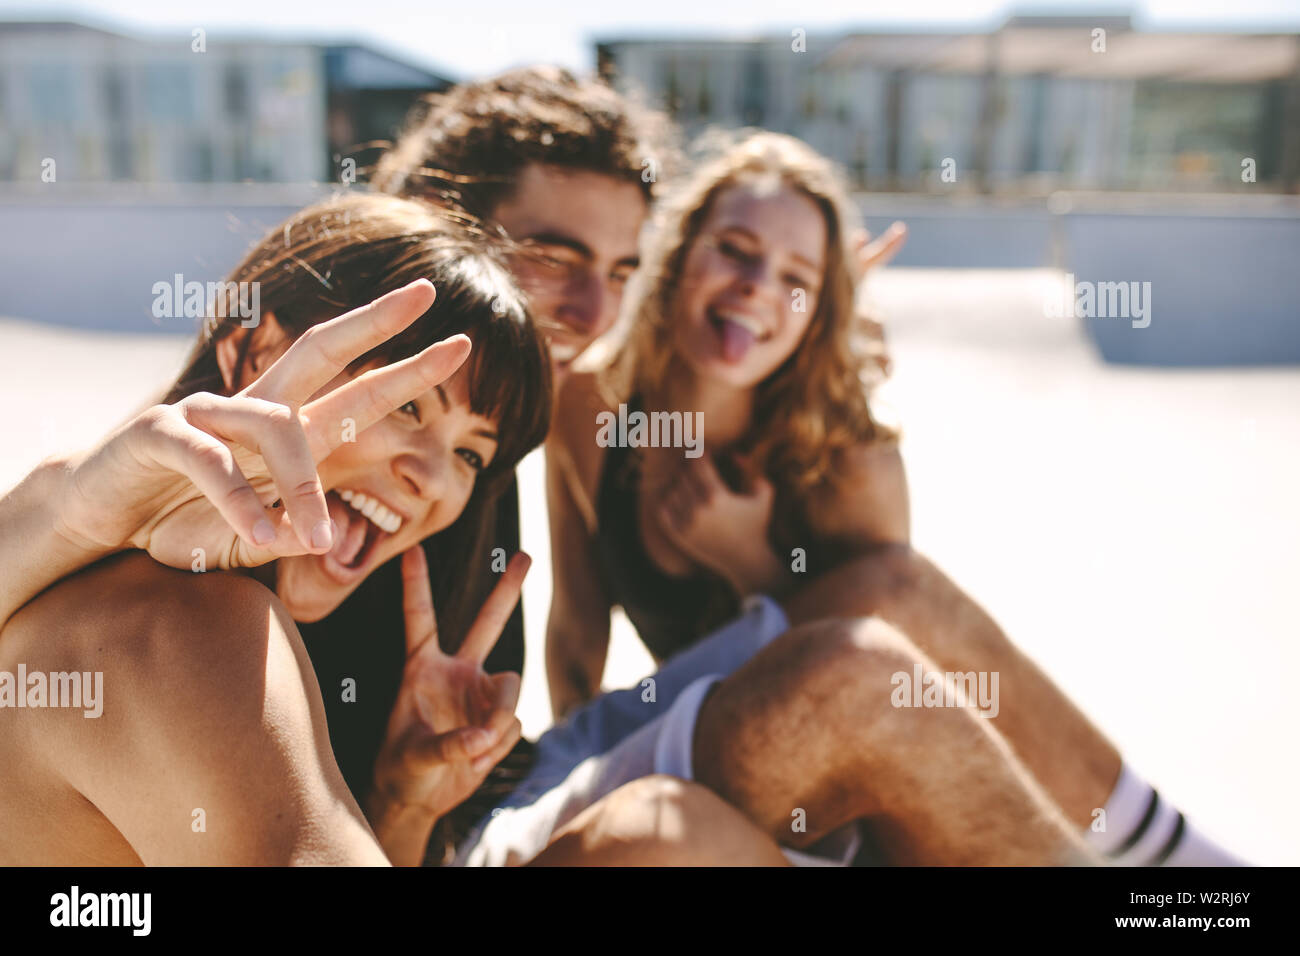 Frau Unter Selfie Mit Freunden Draussen Sitzen Frohliche Freunde Machen Eine Selfie Im Freien Stockfotografie Alamy